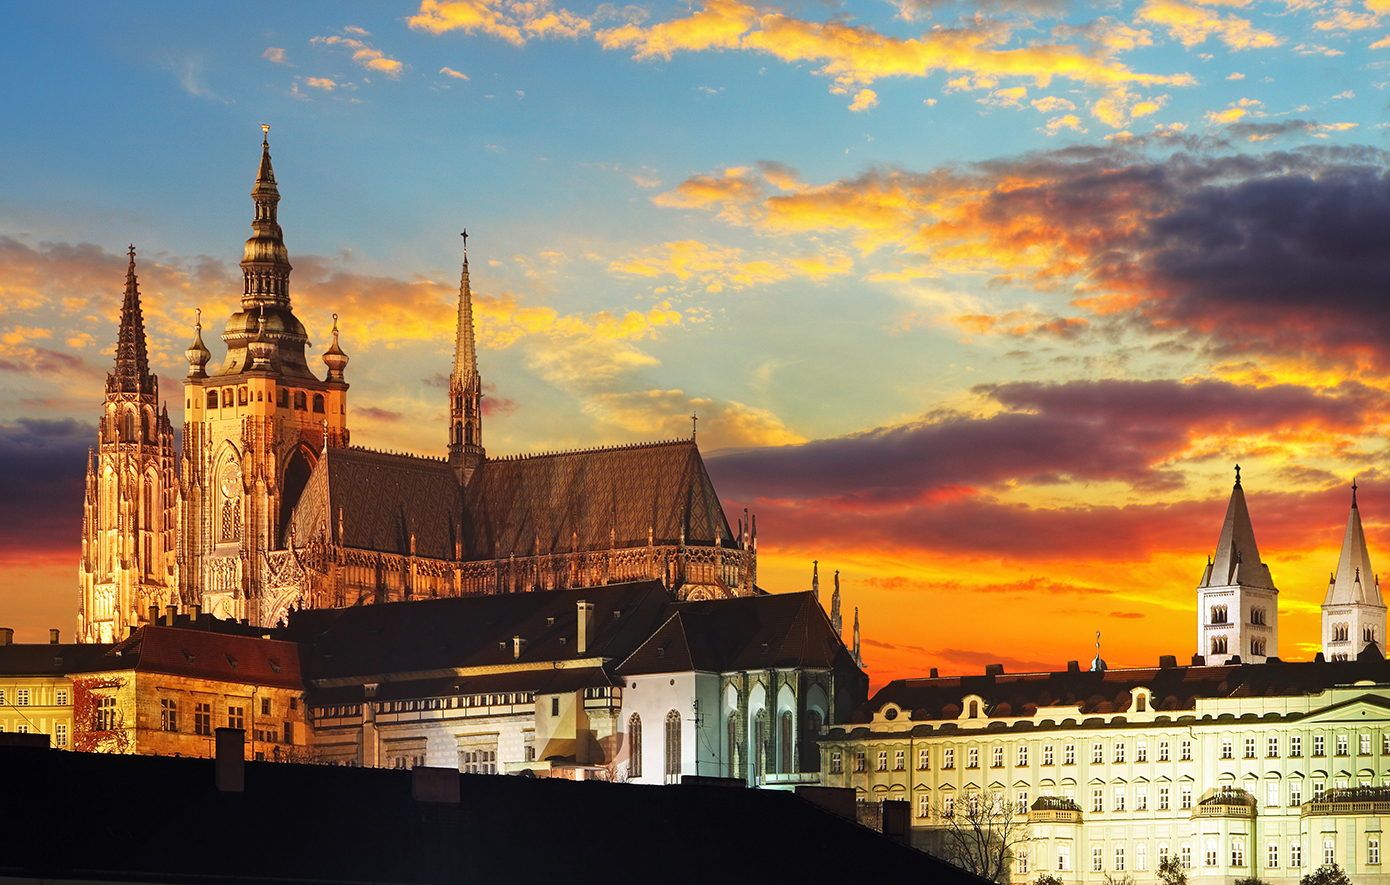 Συναρπαστικές ιστορίες πίσω από το εμβληματικό Κάστρο της Πράγας